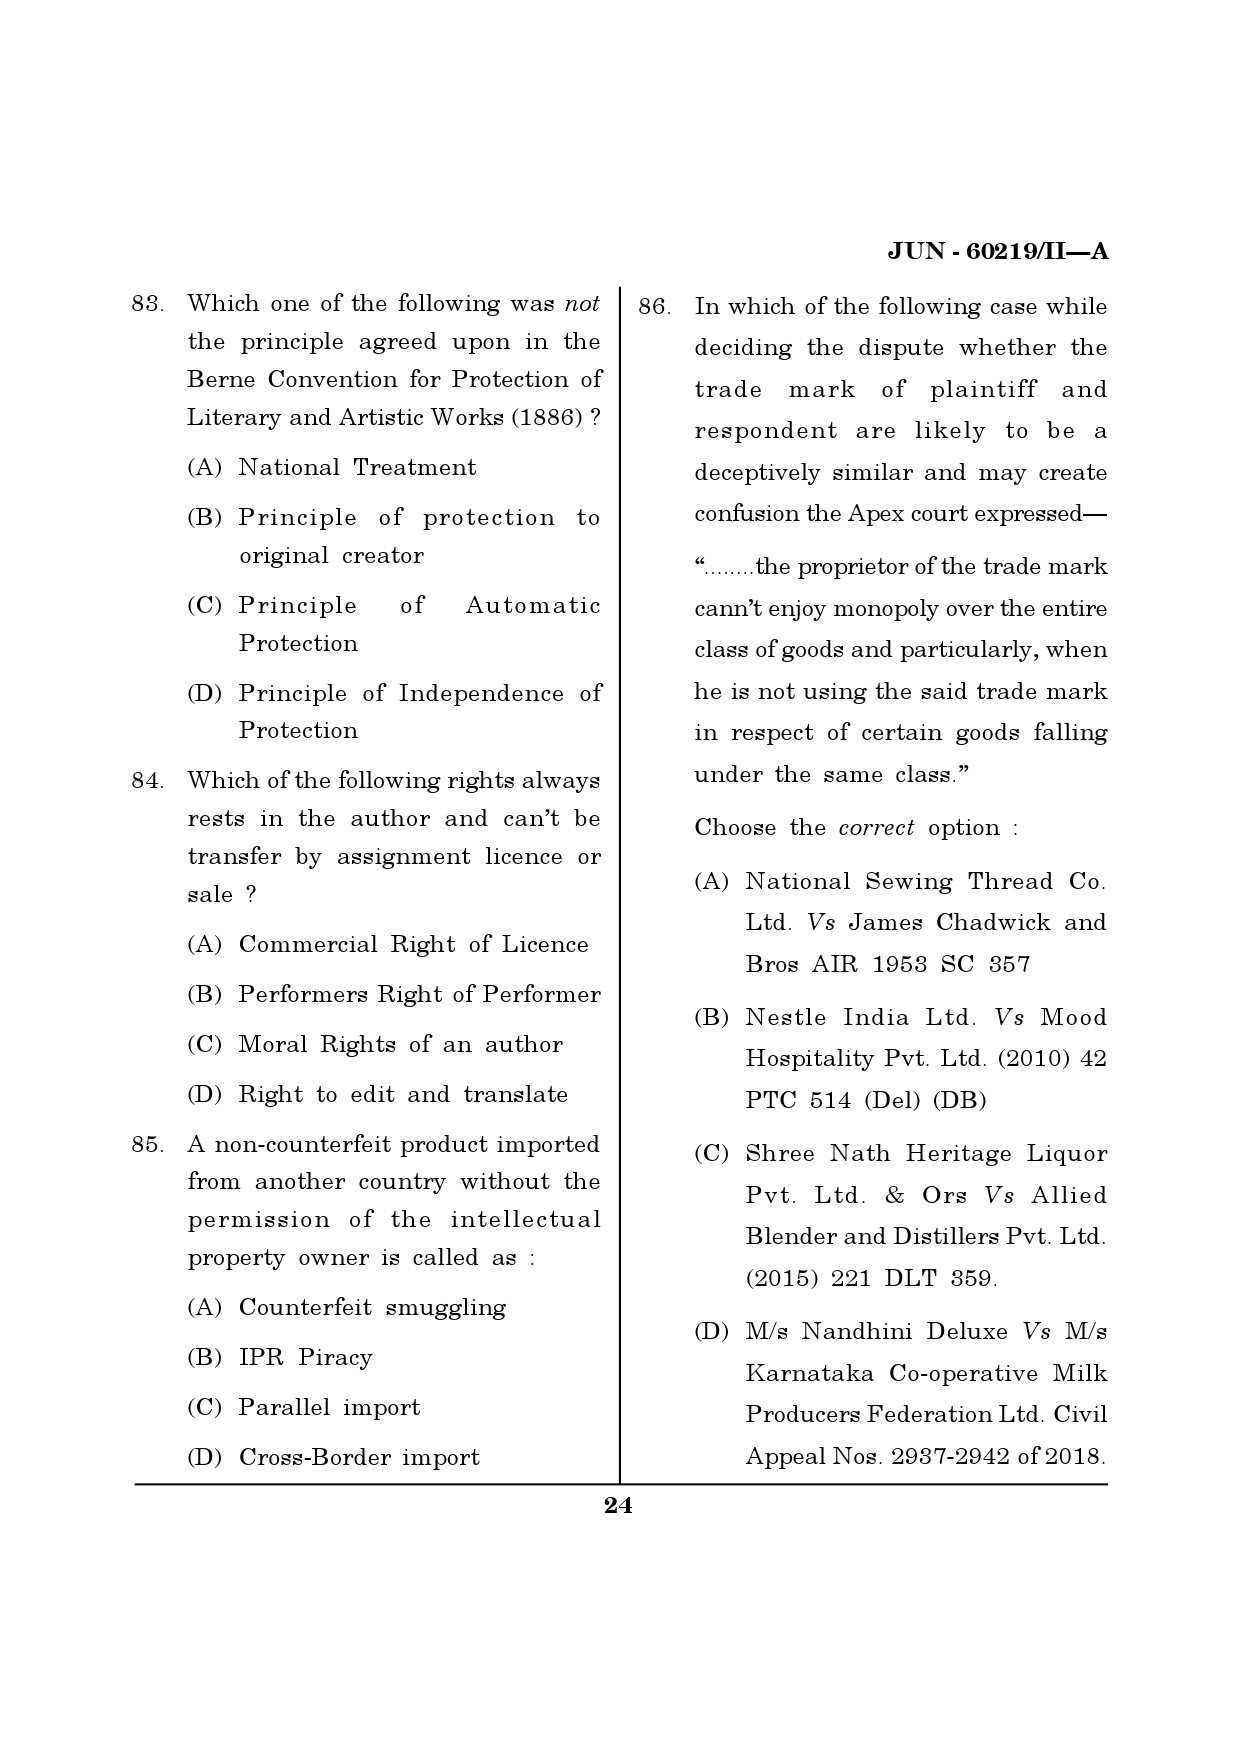 Maharashtra SET Law Question Paper II June 2019 23